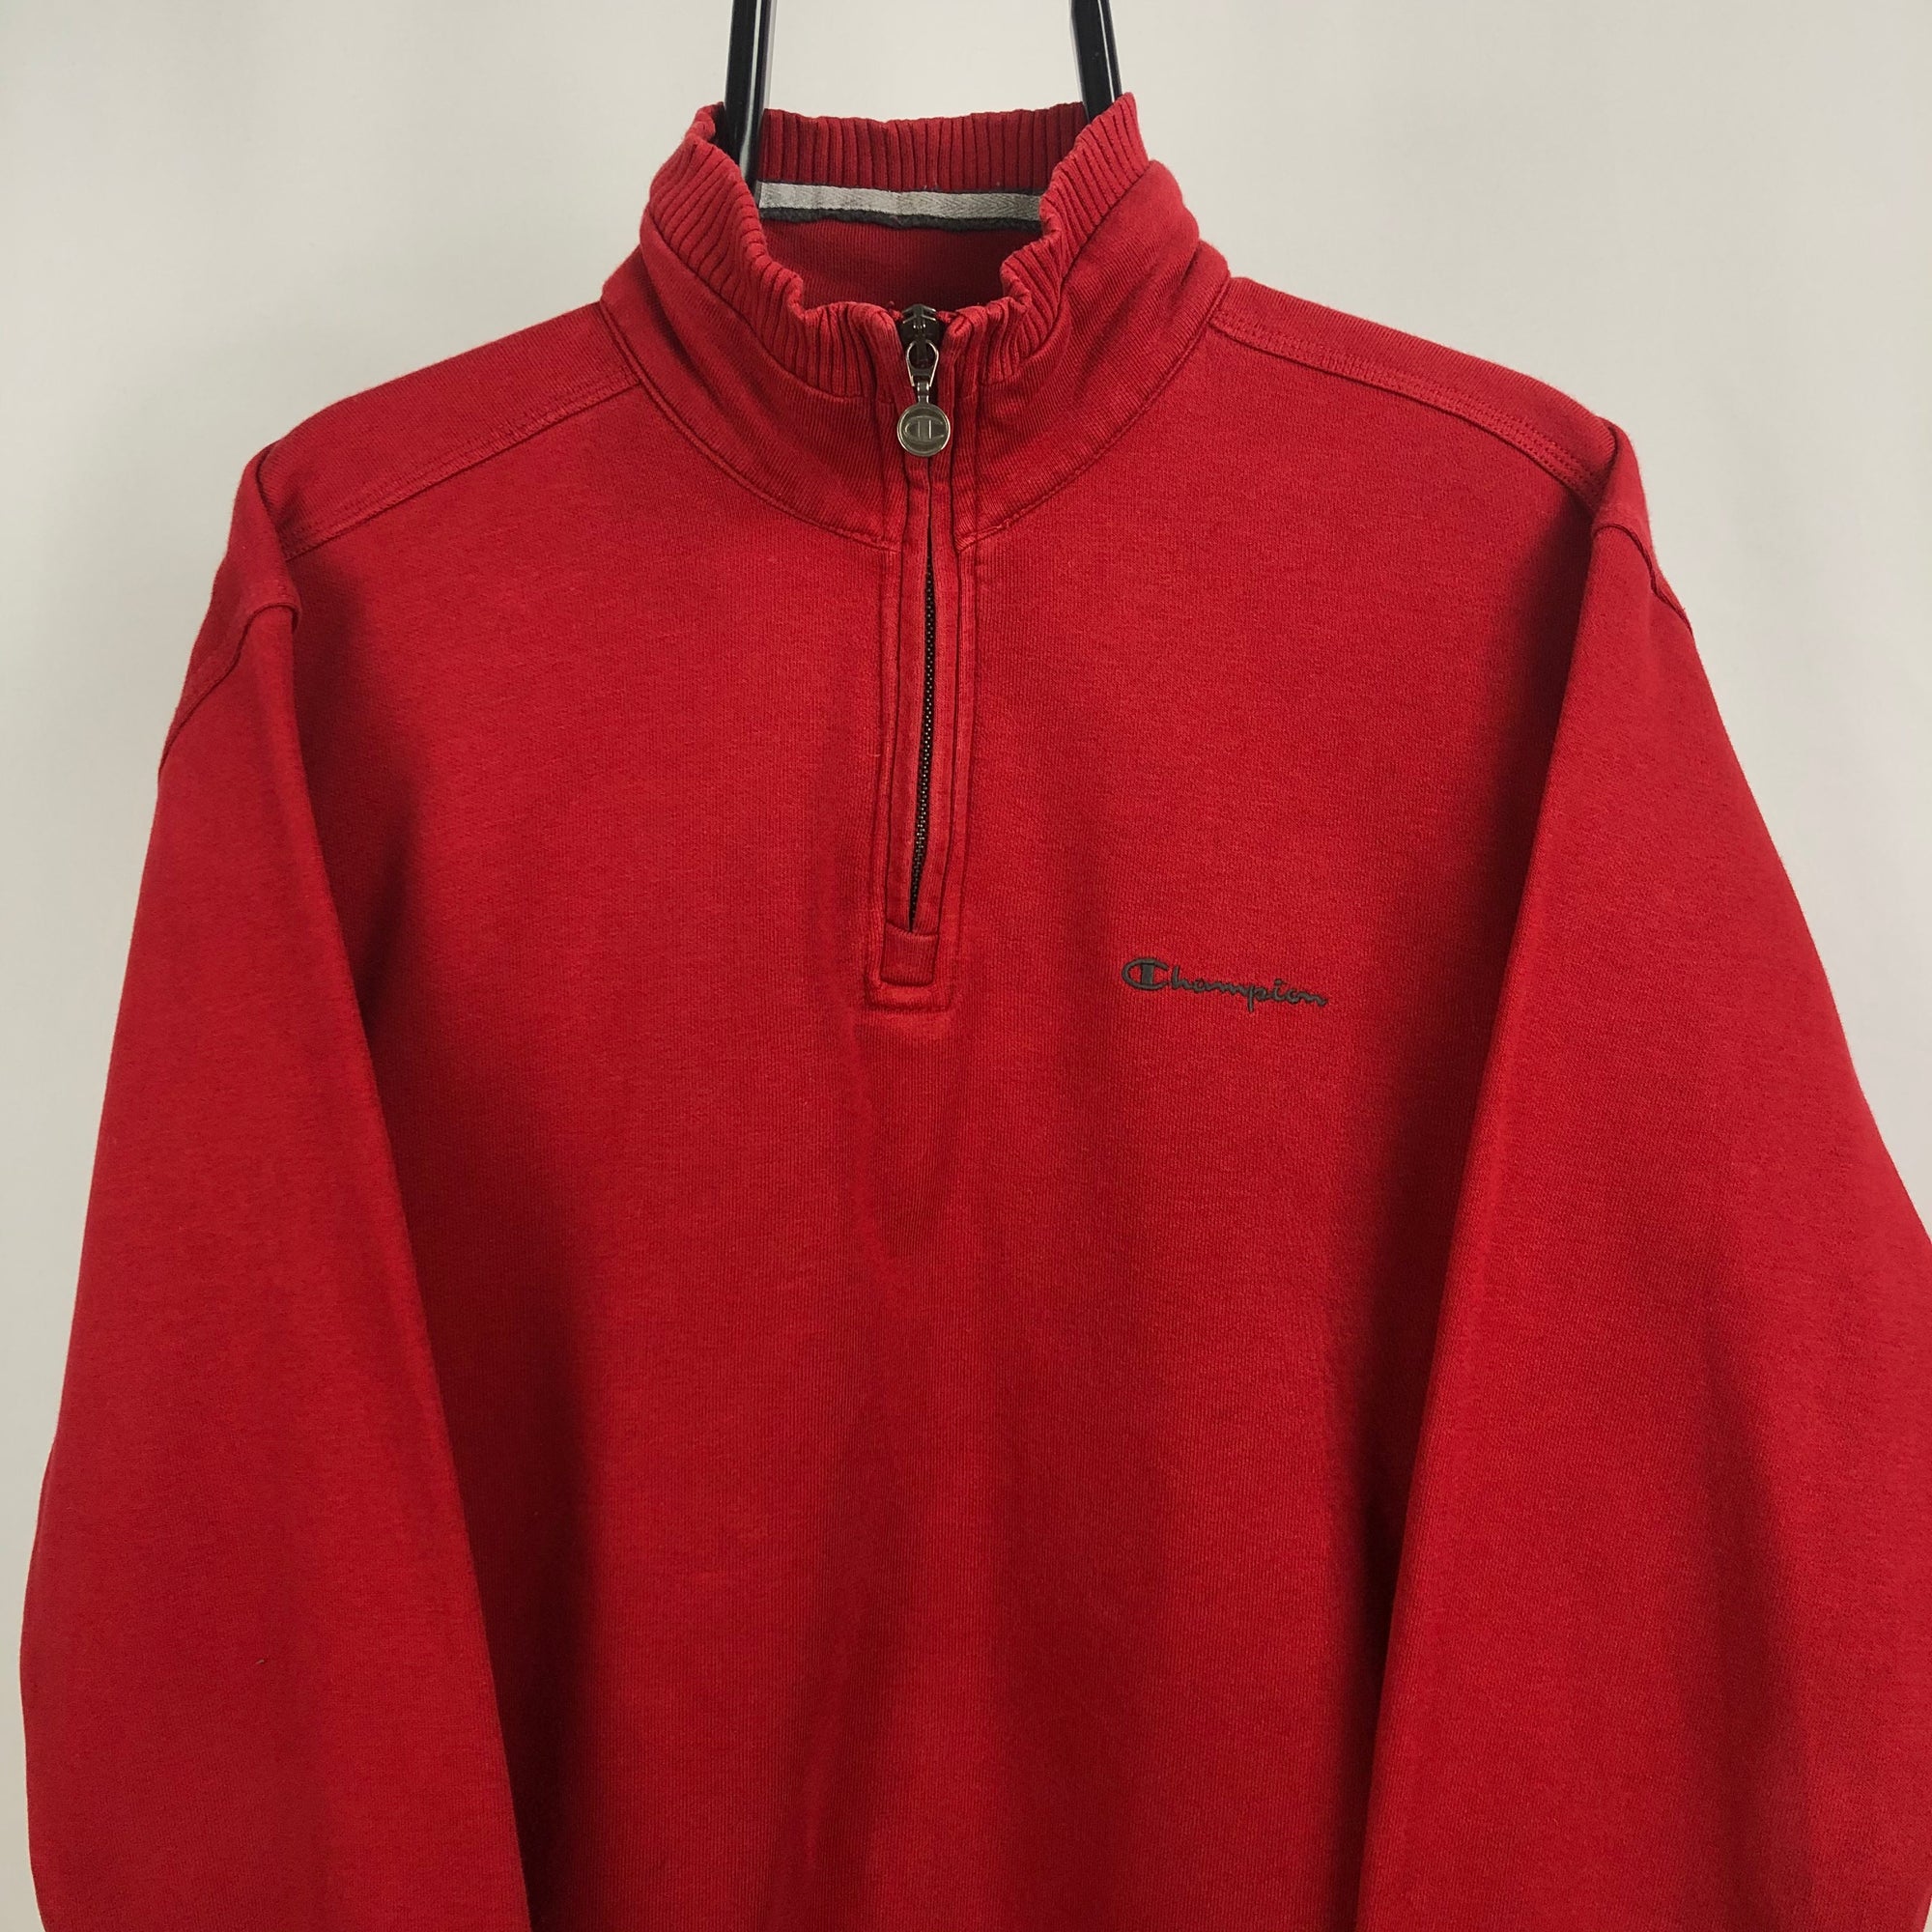 Vintage Champion 1/4 Zip Sweatshirt in Red - Men's Large/Women's XL